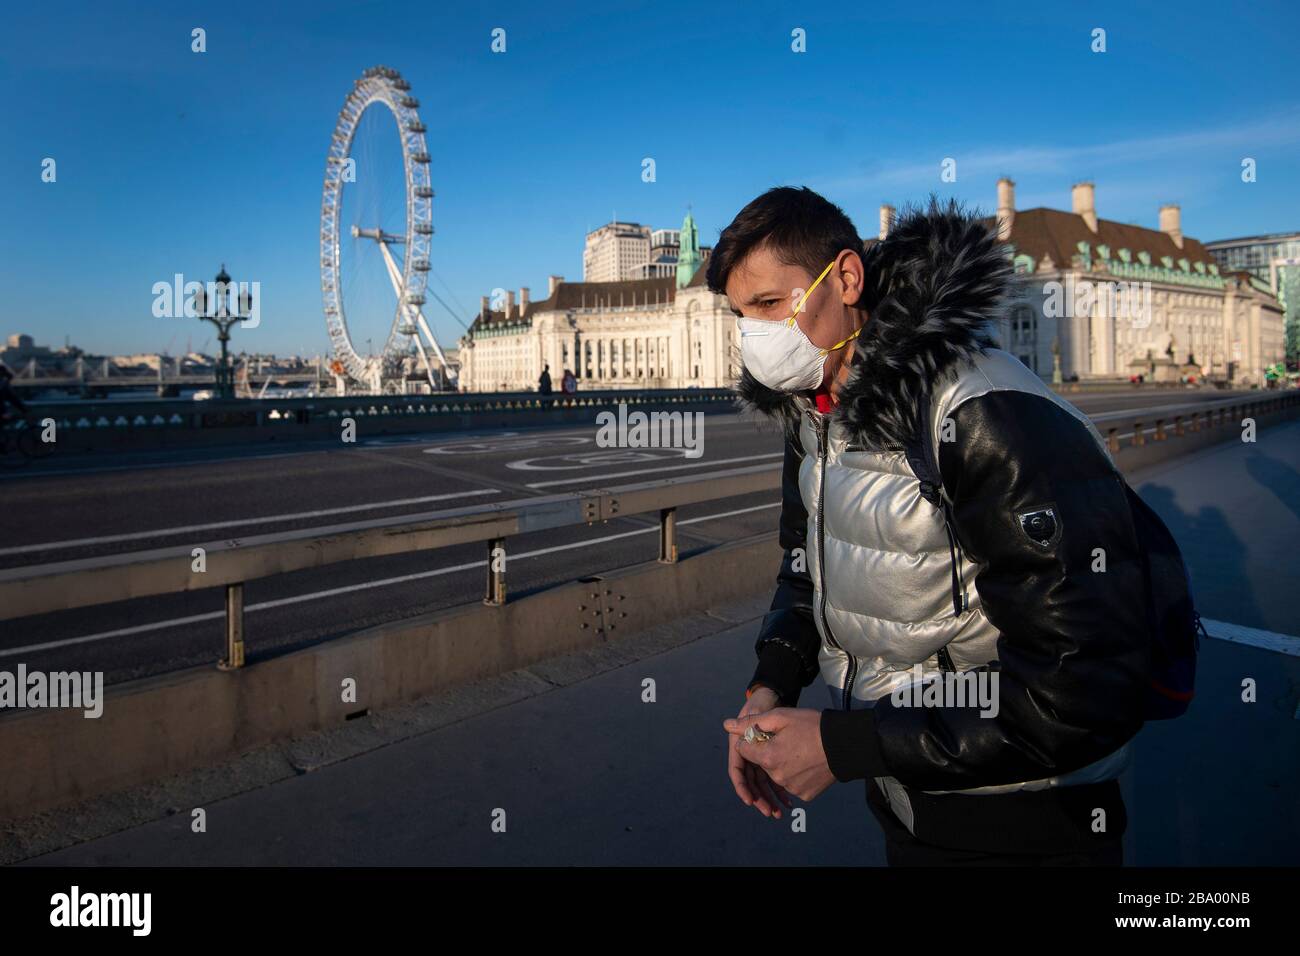 Ein Mann in einer schützenden Gesichtsmaske läuft in der normalerweise geschäftigen Hauptverkehrszeit am Abend auf der Westminster Bridge, London, nachdem Premierminister Boris Johnson die Entscheidung getroffen hatte, Großbritannien in Sperrstellung zu bringen, um die Ausbreitung des Coronavirus einzudämmen. Stockfoto